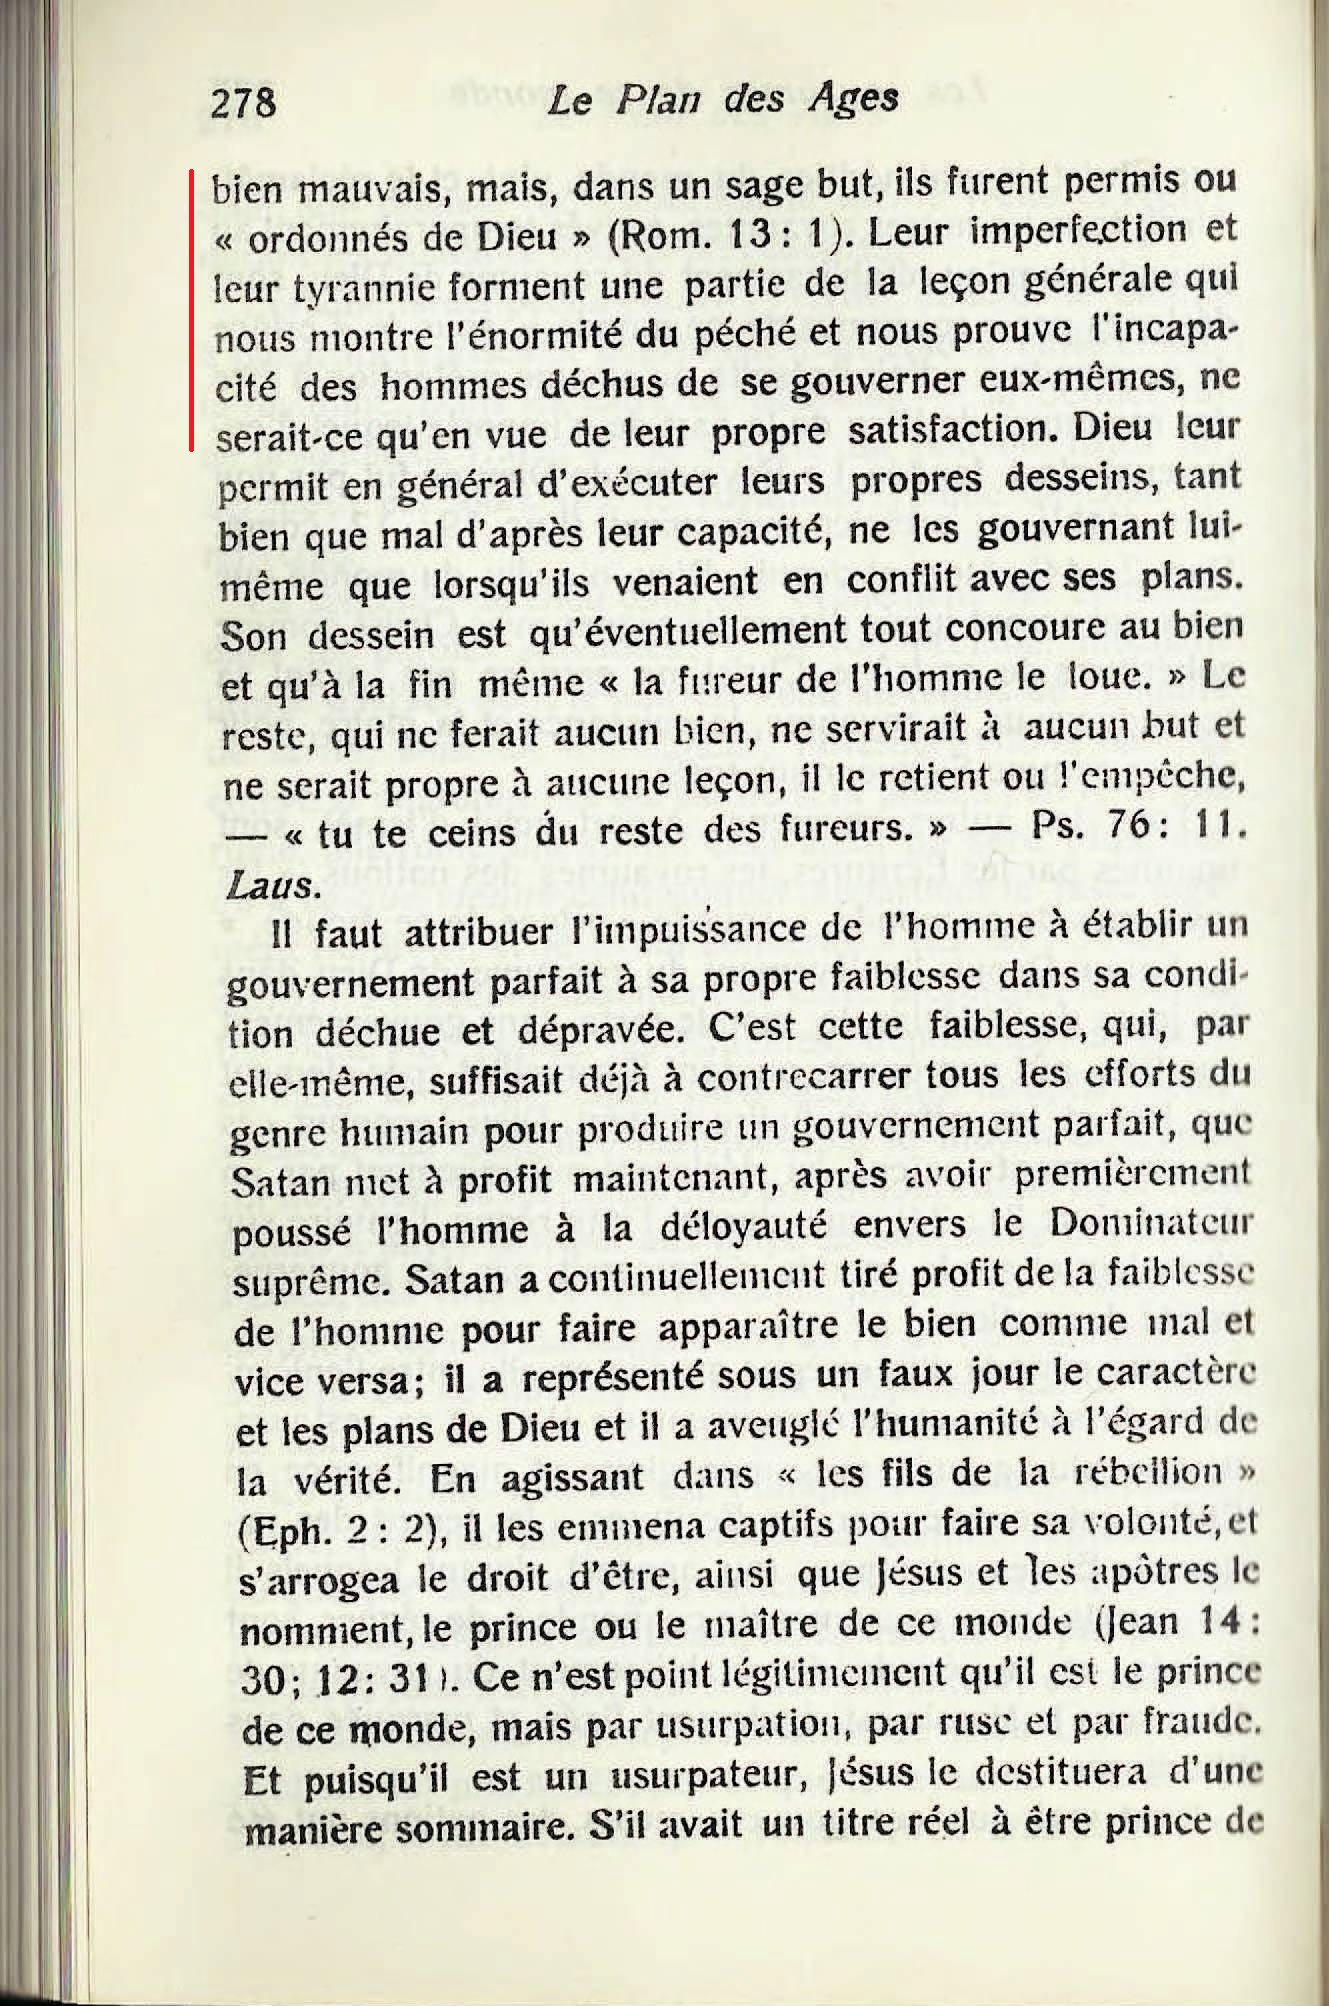 Les autorités supérieures  1886_Etudes_dans_les_Ecritures_Vol1_Le_Divin_Plan_Des_Ages(scan)-p278